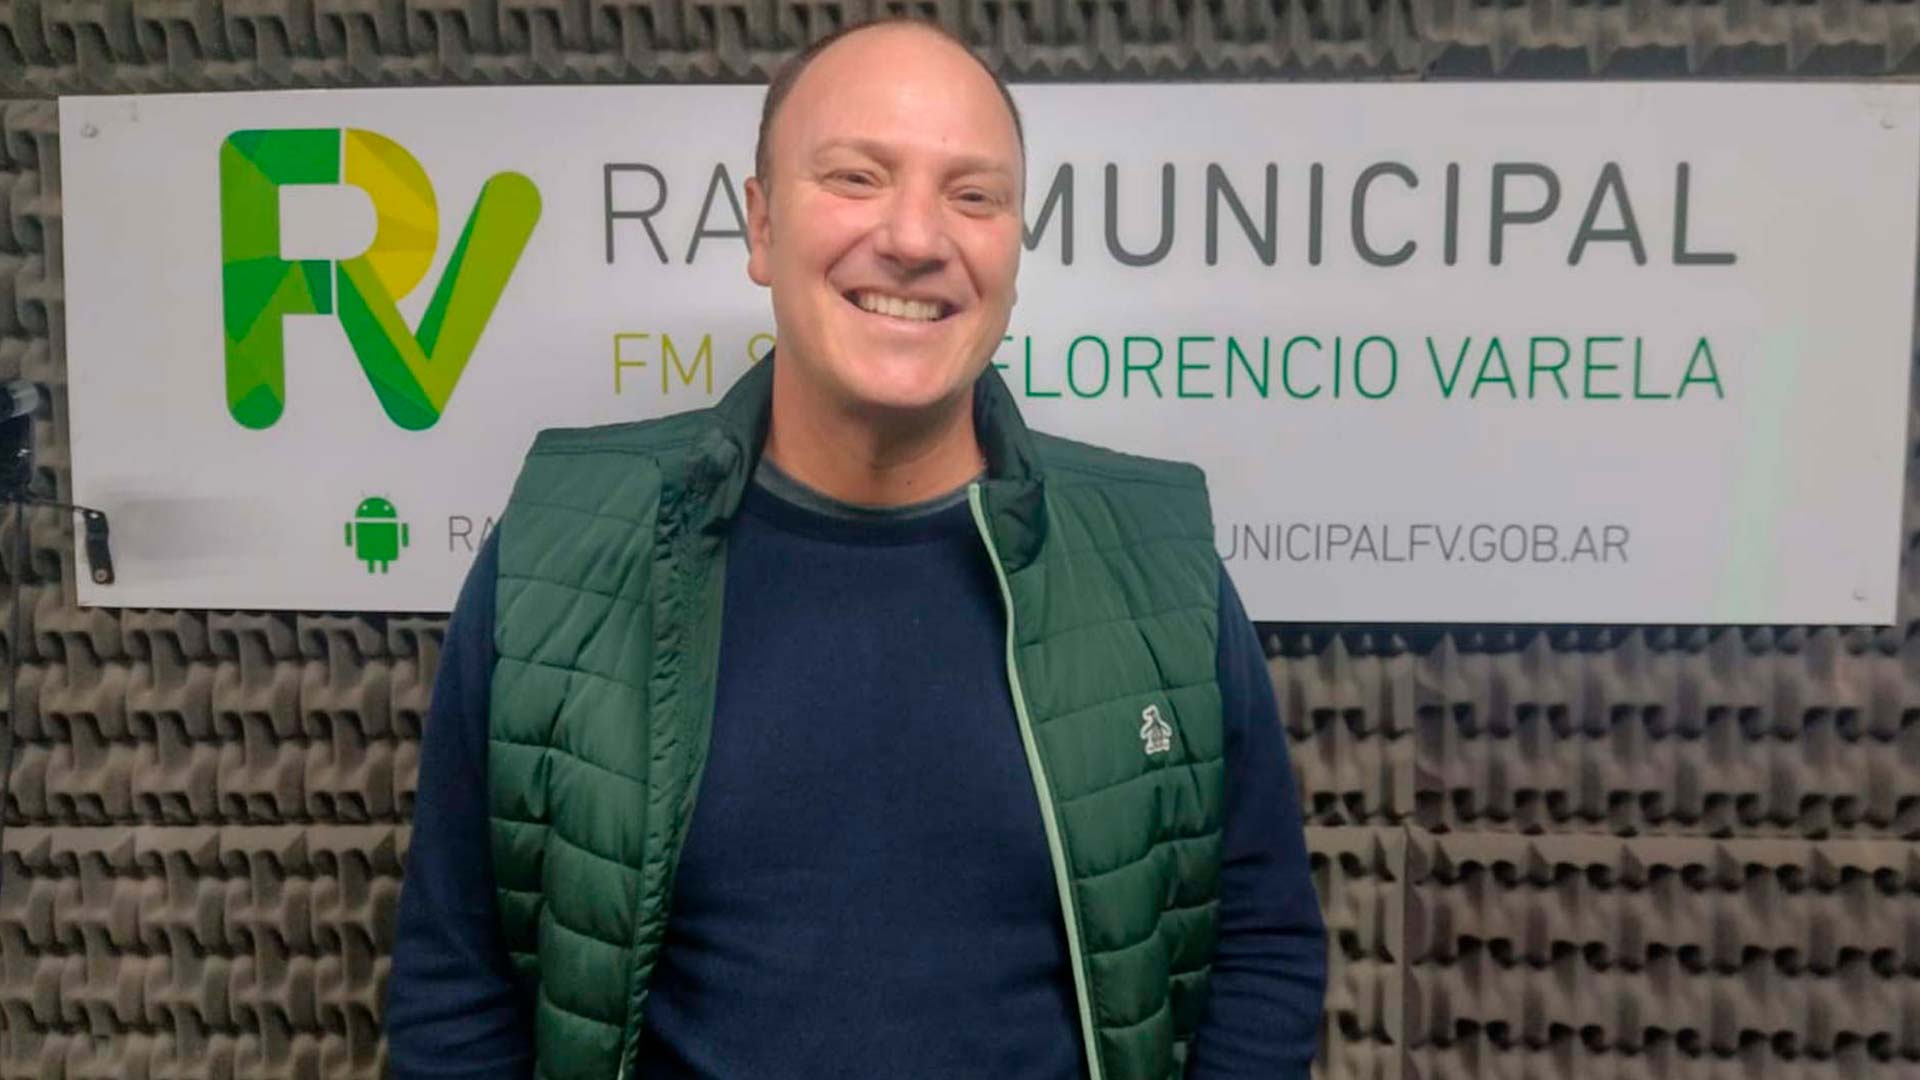 Bien plantados - Gastón Manzo, Director Comercial de “Bien Plantados” visitó el estudio de Radio Municipal Florencio Varela